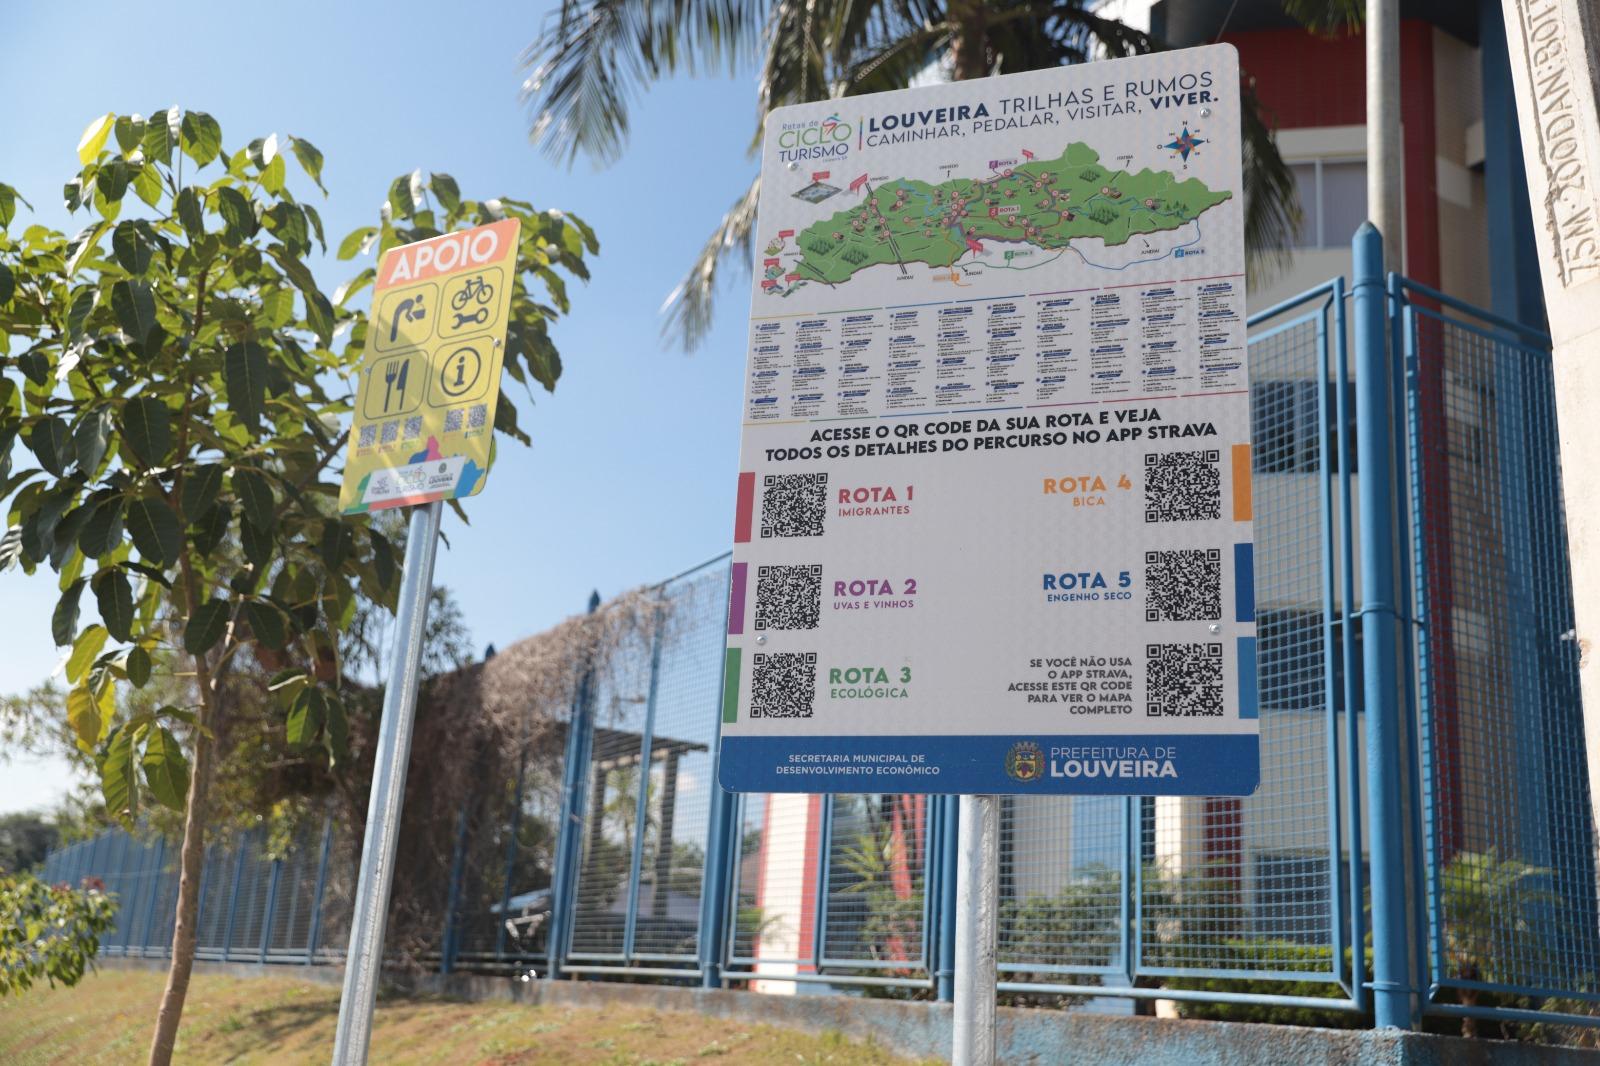 Turismo: Prefeitura de Louveira estrutura 5 rotas ciclísticas com instalação de 164 placas indicativas